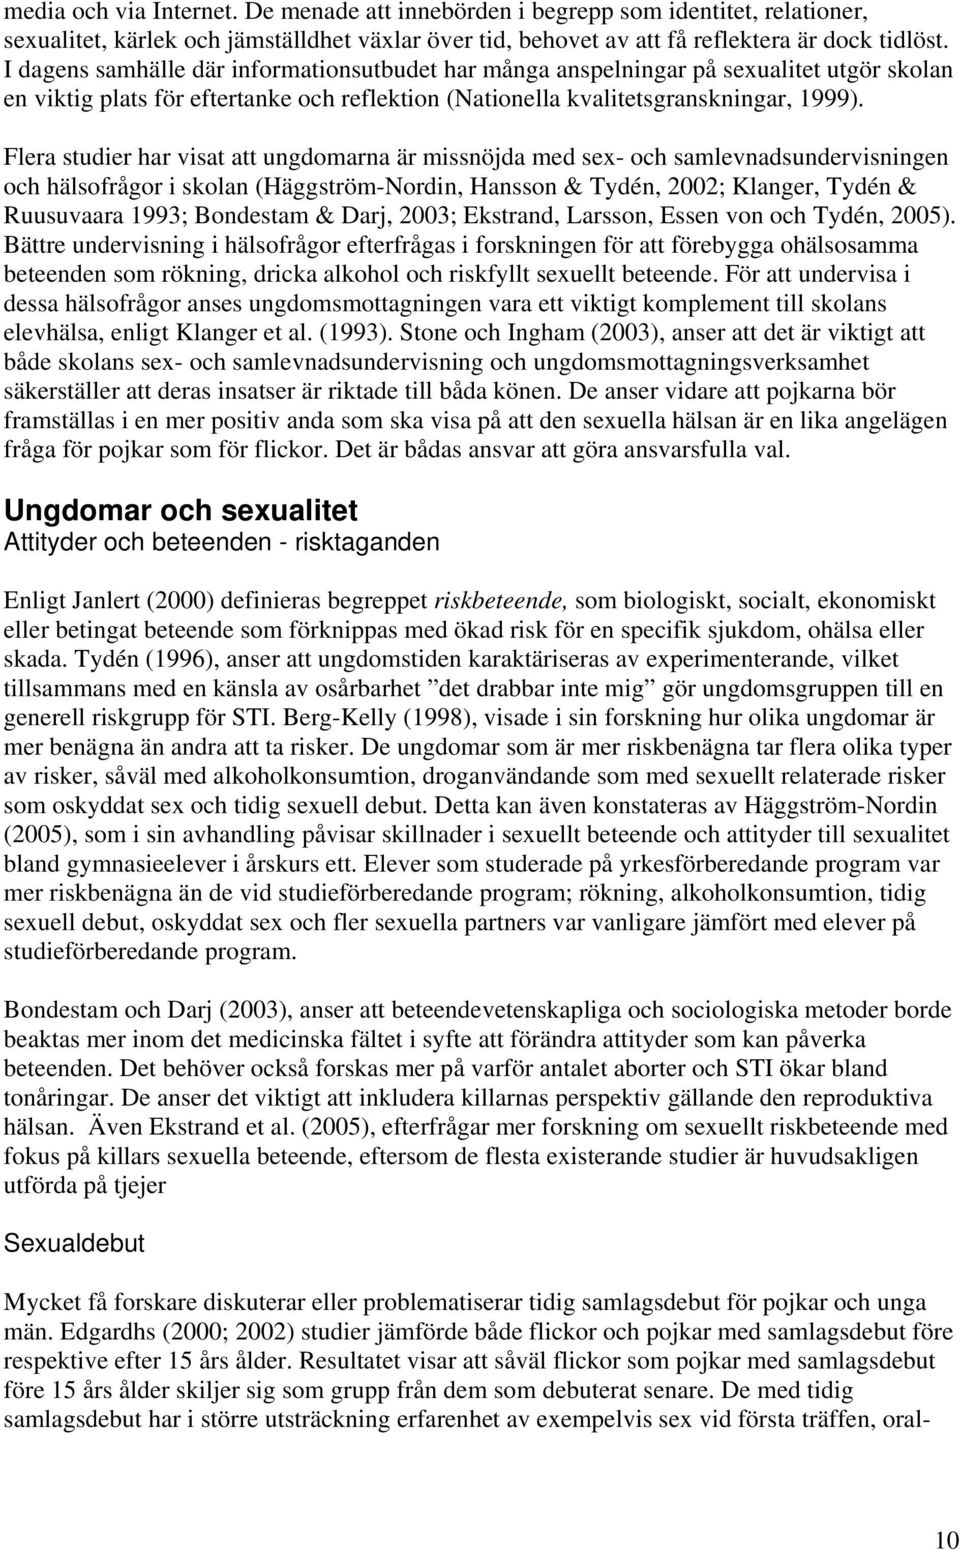 Flera studier har visat att ungdomarna är missnöjda med sex- och samlevnadsundervisningen och hälsofrågor i skolan (Häggström-Nordin, Hansson & Tydén, 2002; Klanger, Tydén & Ruusuvaara 1993;